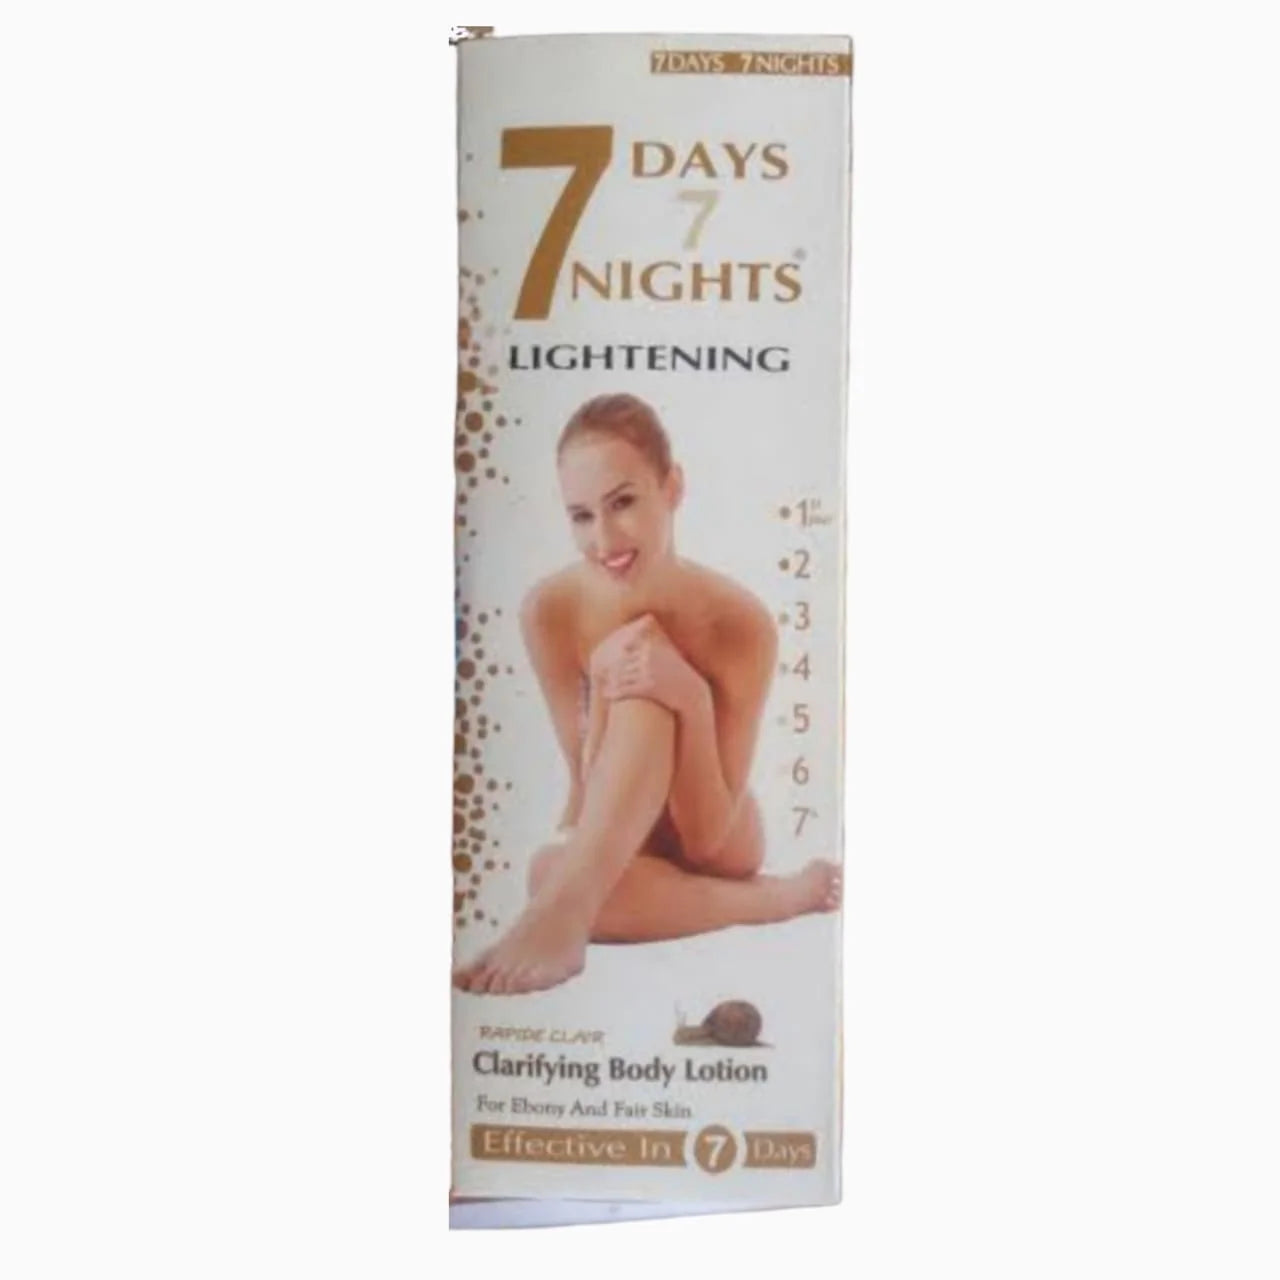 7 Days 7 Nights Lightening Clarifying Body Lotion